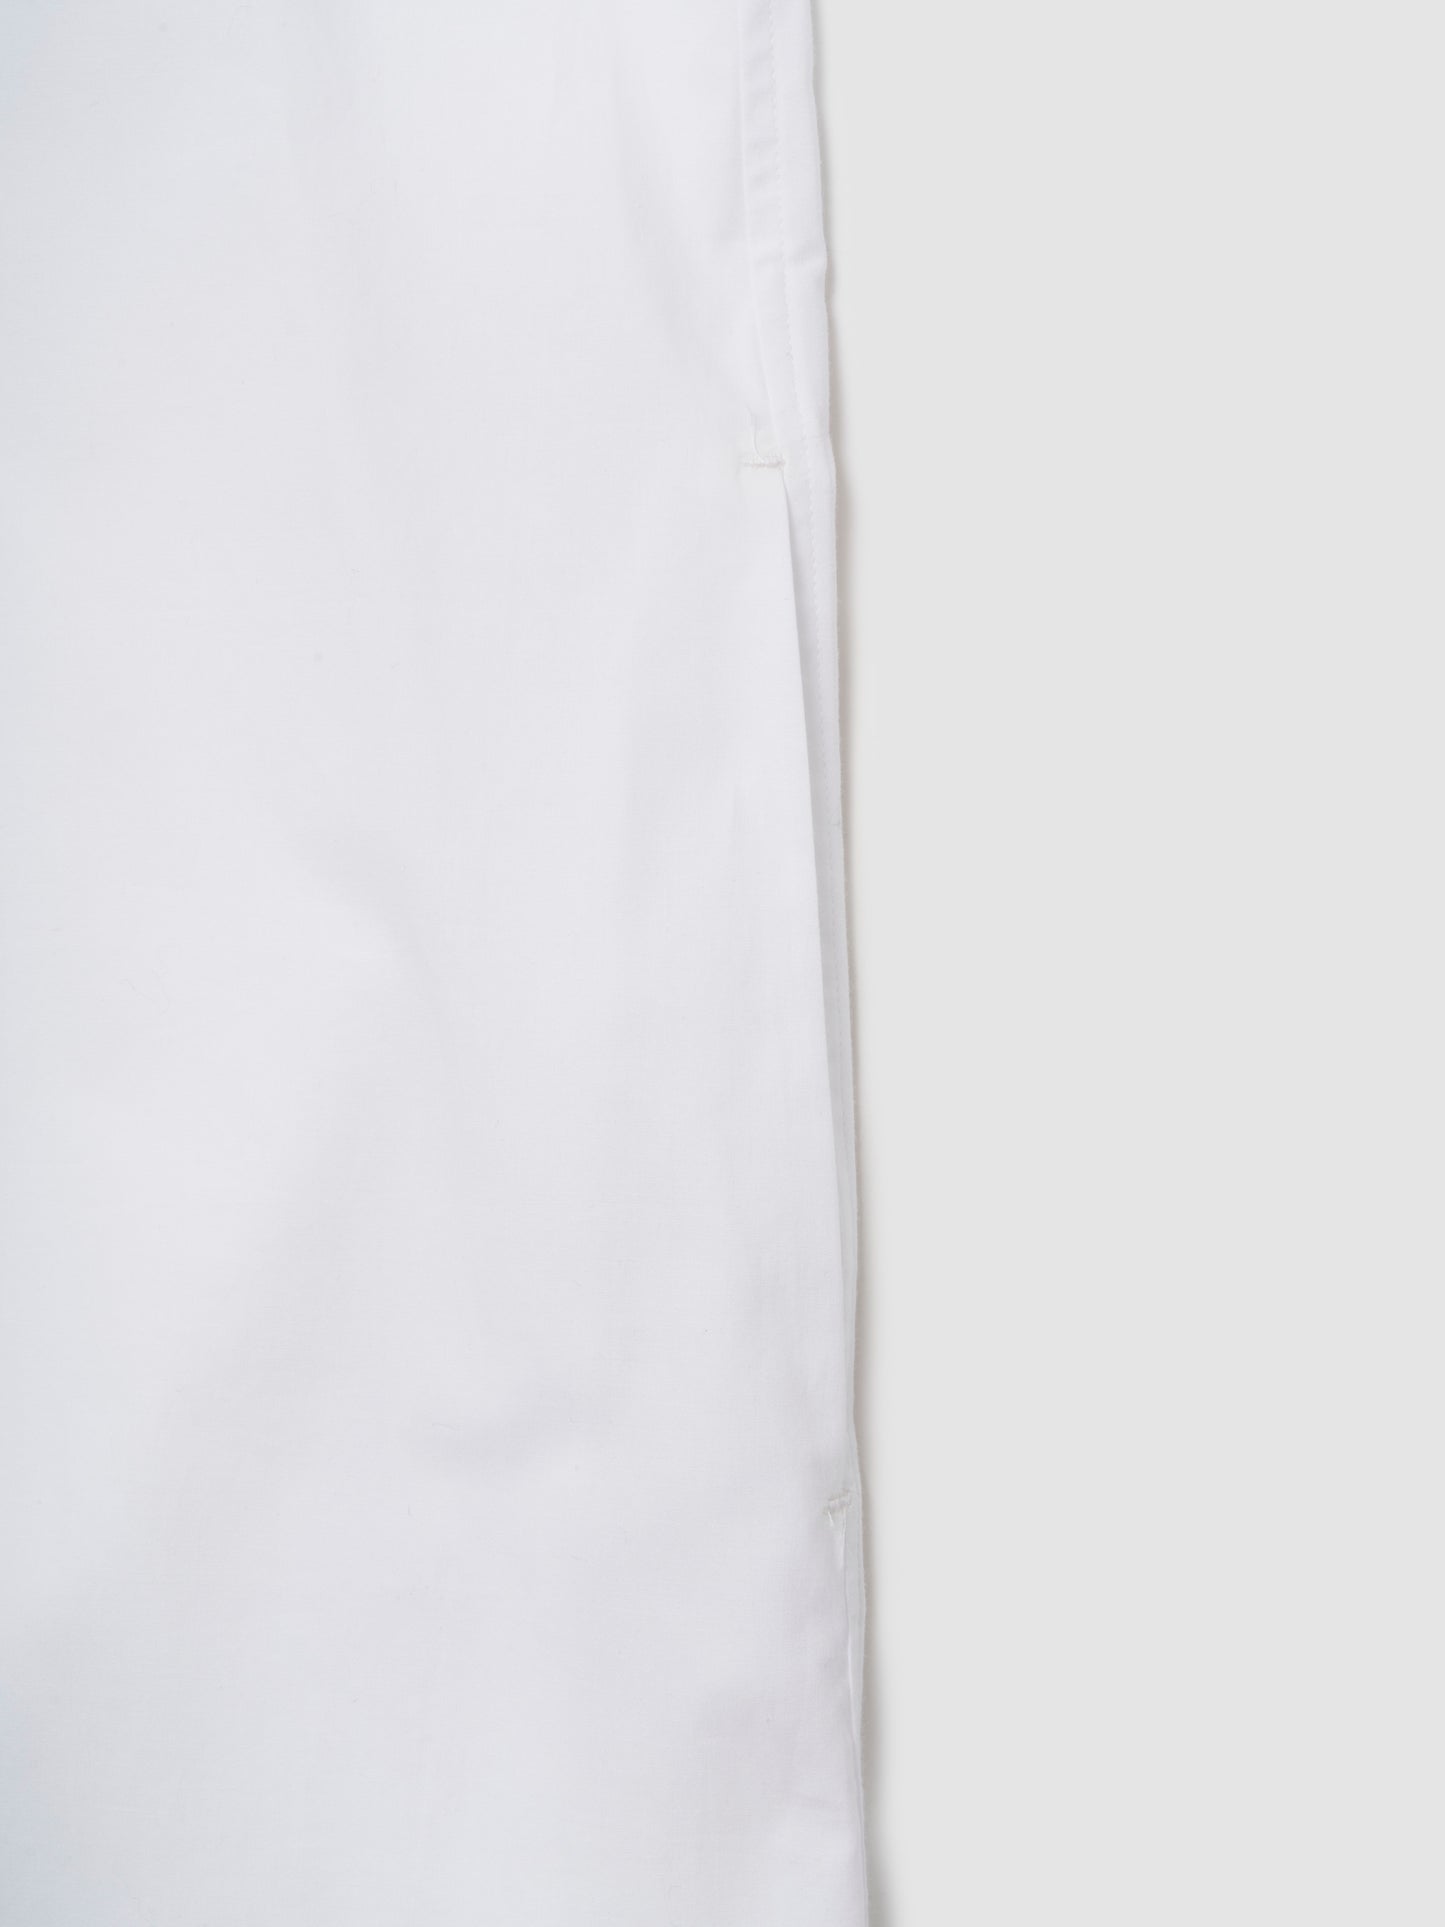 PJ SHIRT DRESS/ WHITE